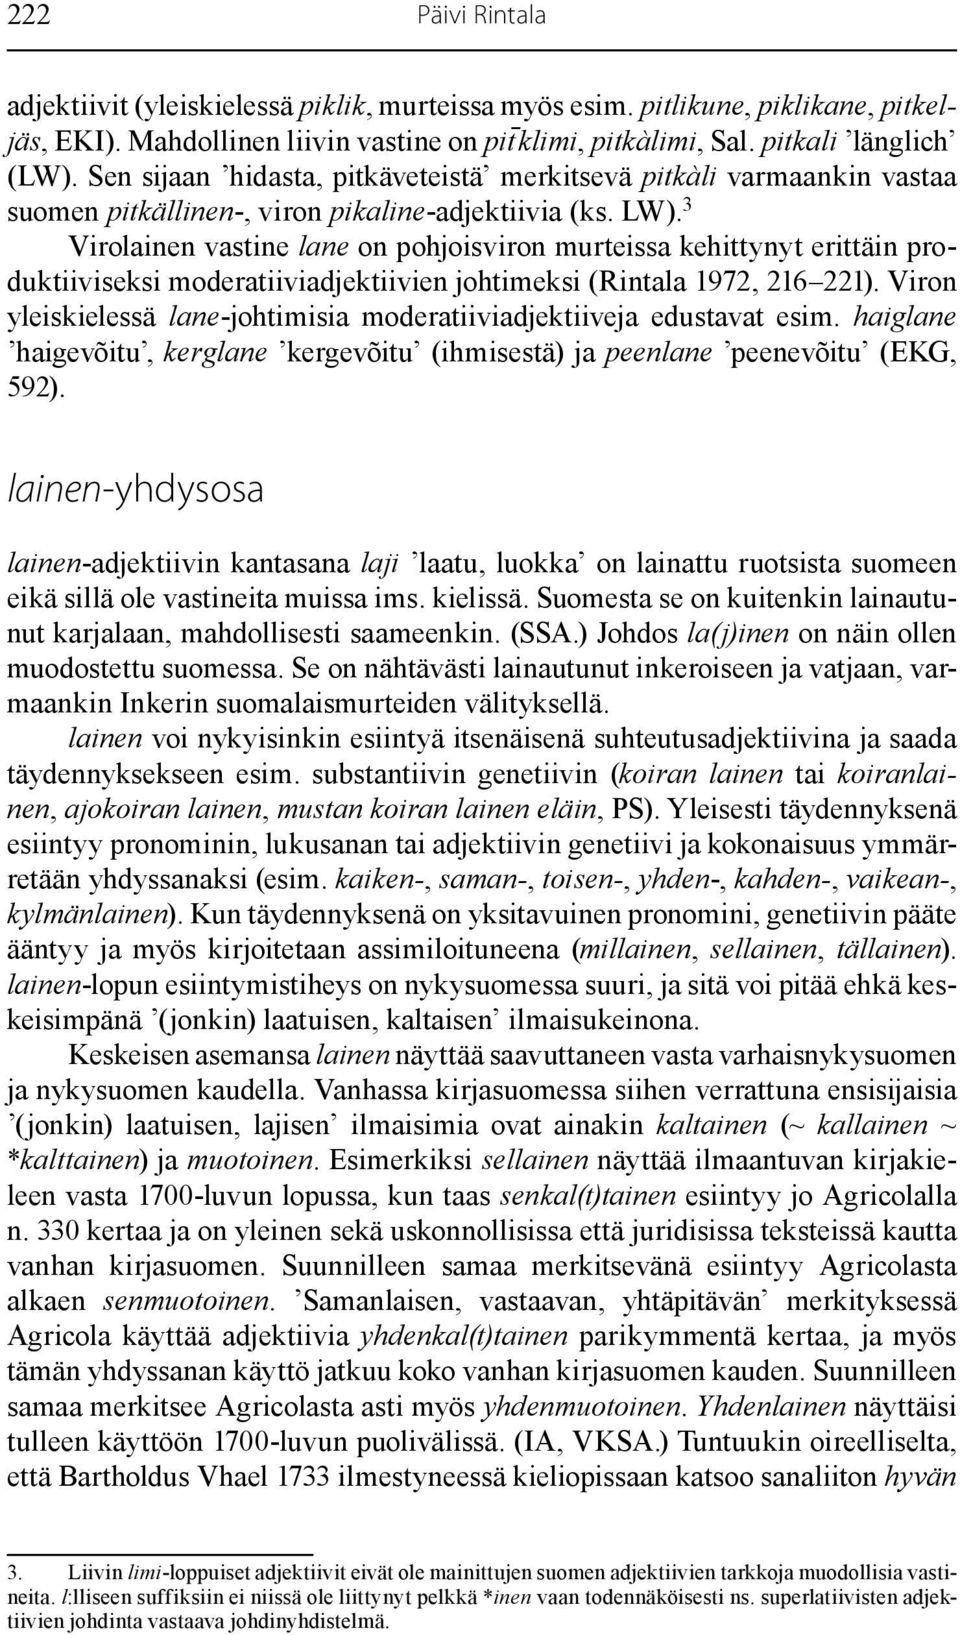 3 Virolainen vastine lane on pohjoisviron murteissa kehittynyt erittäin produktiiviseksi moderatiiviadjektiivien johtimeksi (Rintala 1972, 216 221).